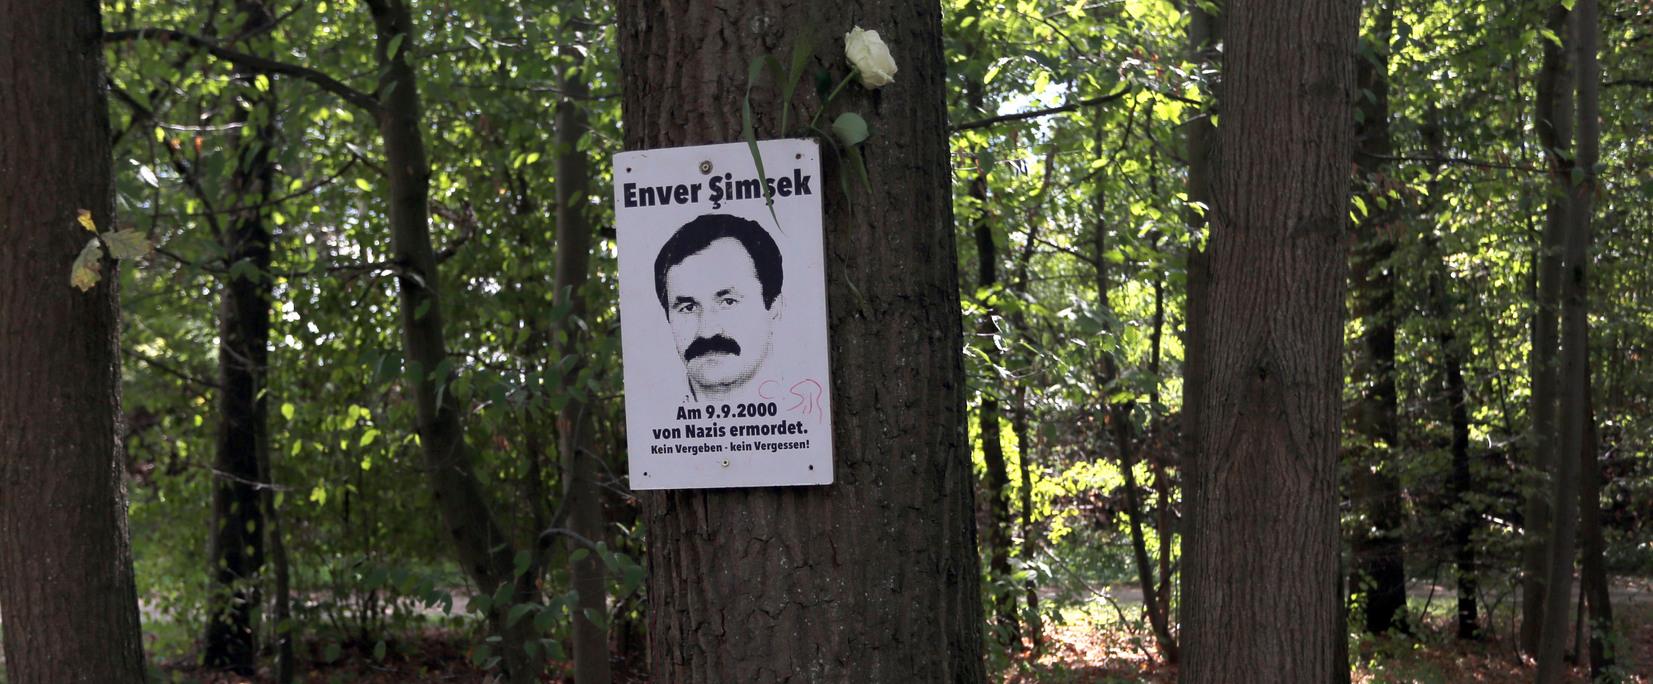 Die inoffizielle Gedenktafel für das mutmaßliche NSU-Opfer Enver Simsek (Foto vom September 2015).